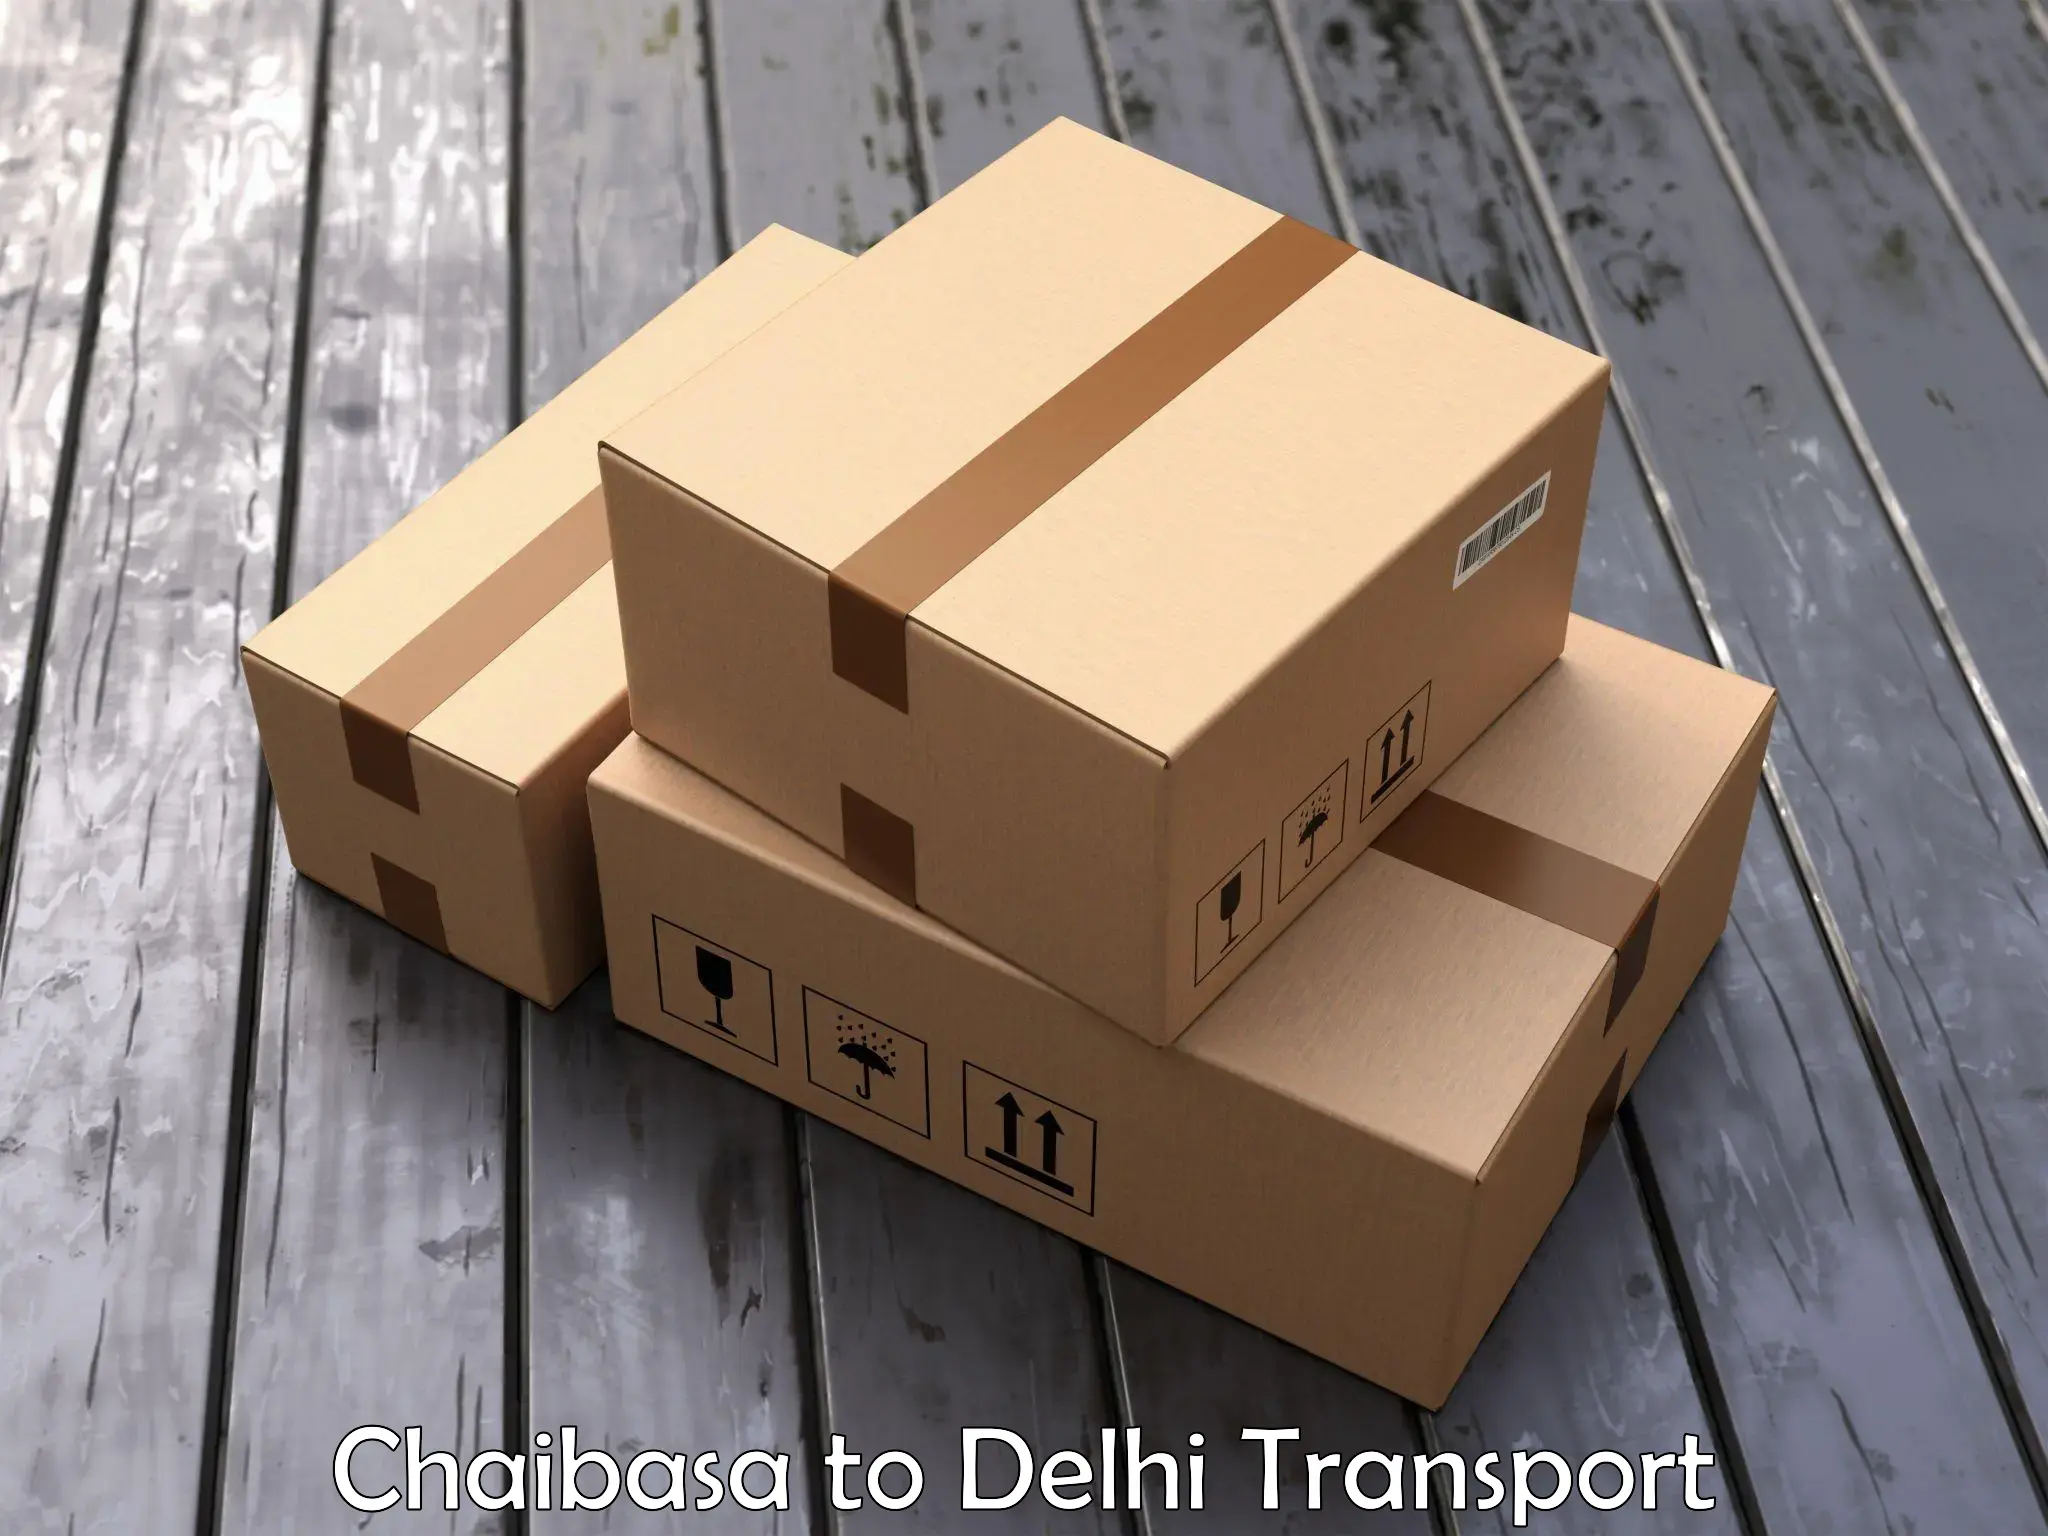 Bike transport service Chaibasa to Delhi